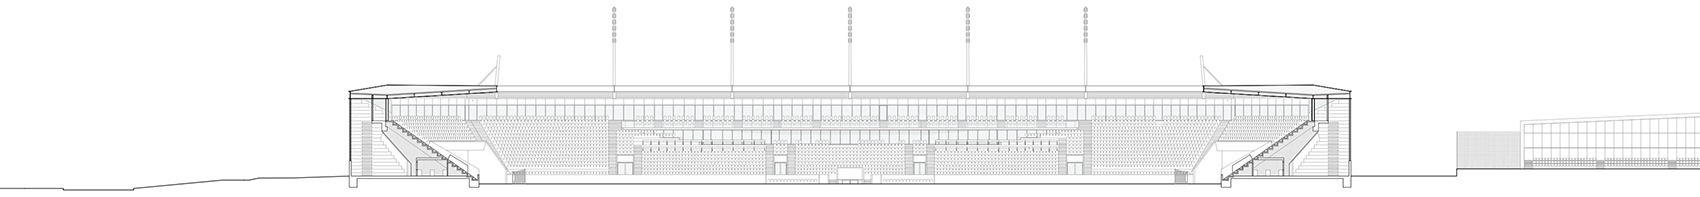 洛桑市新足球场馆，瑞士/散发宁静感的市郊体育设施-98